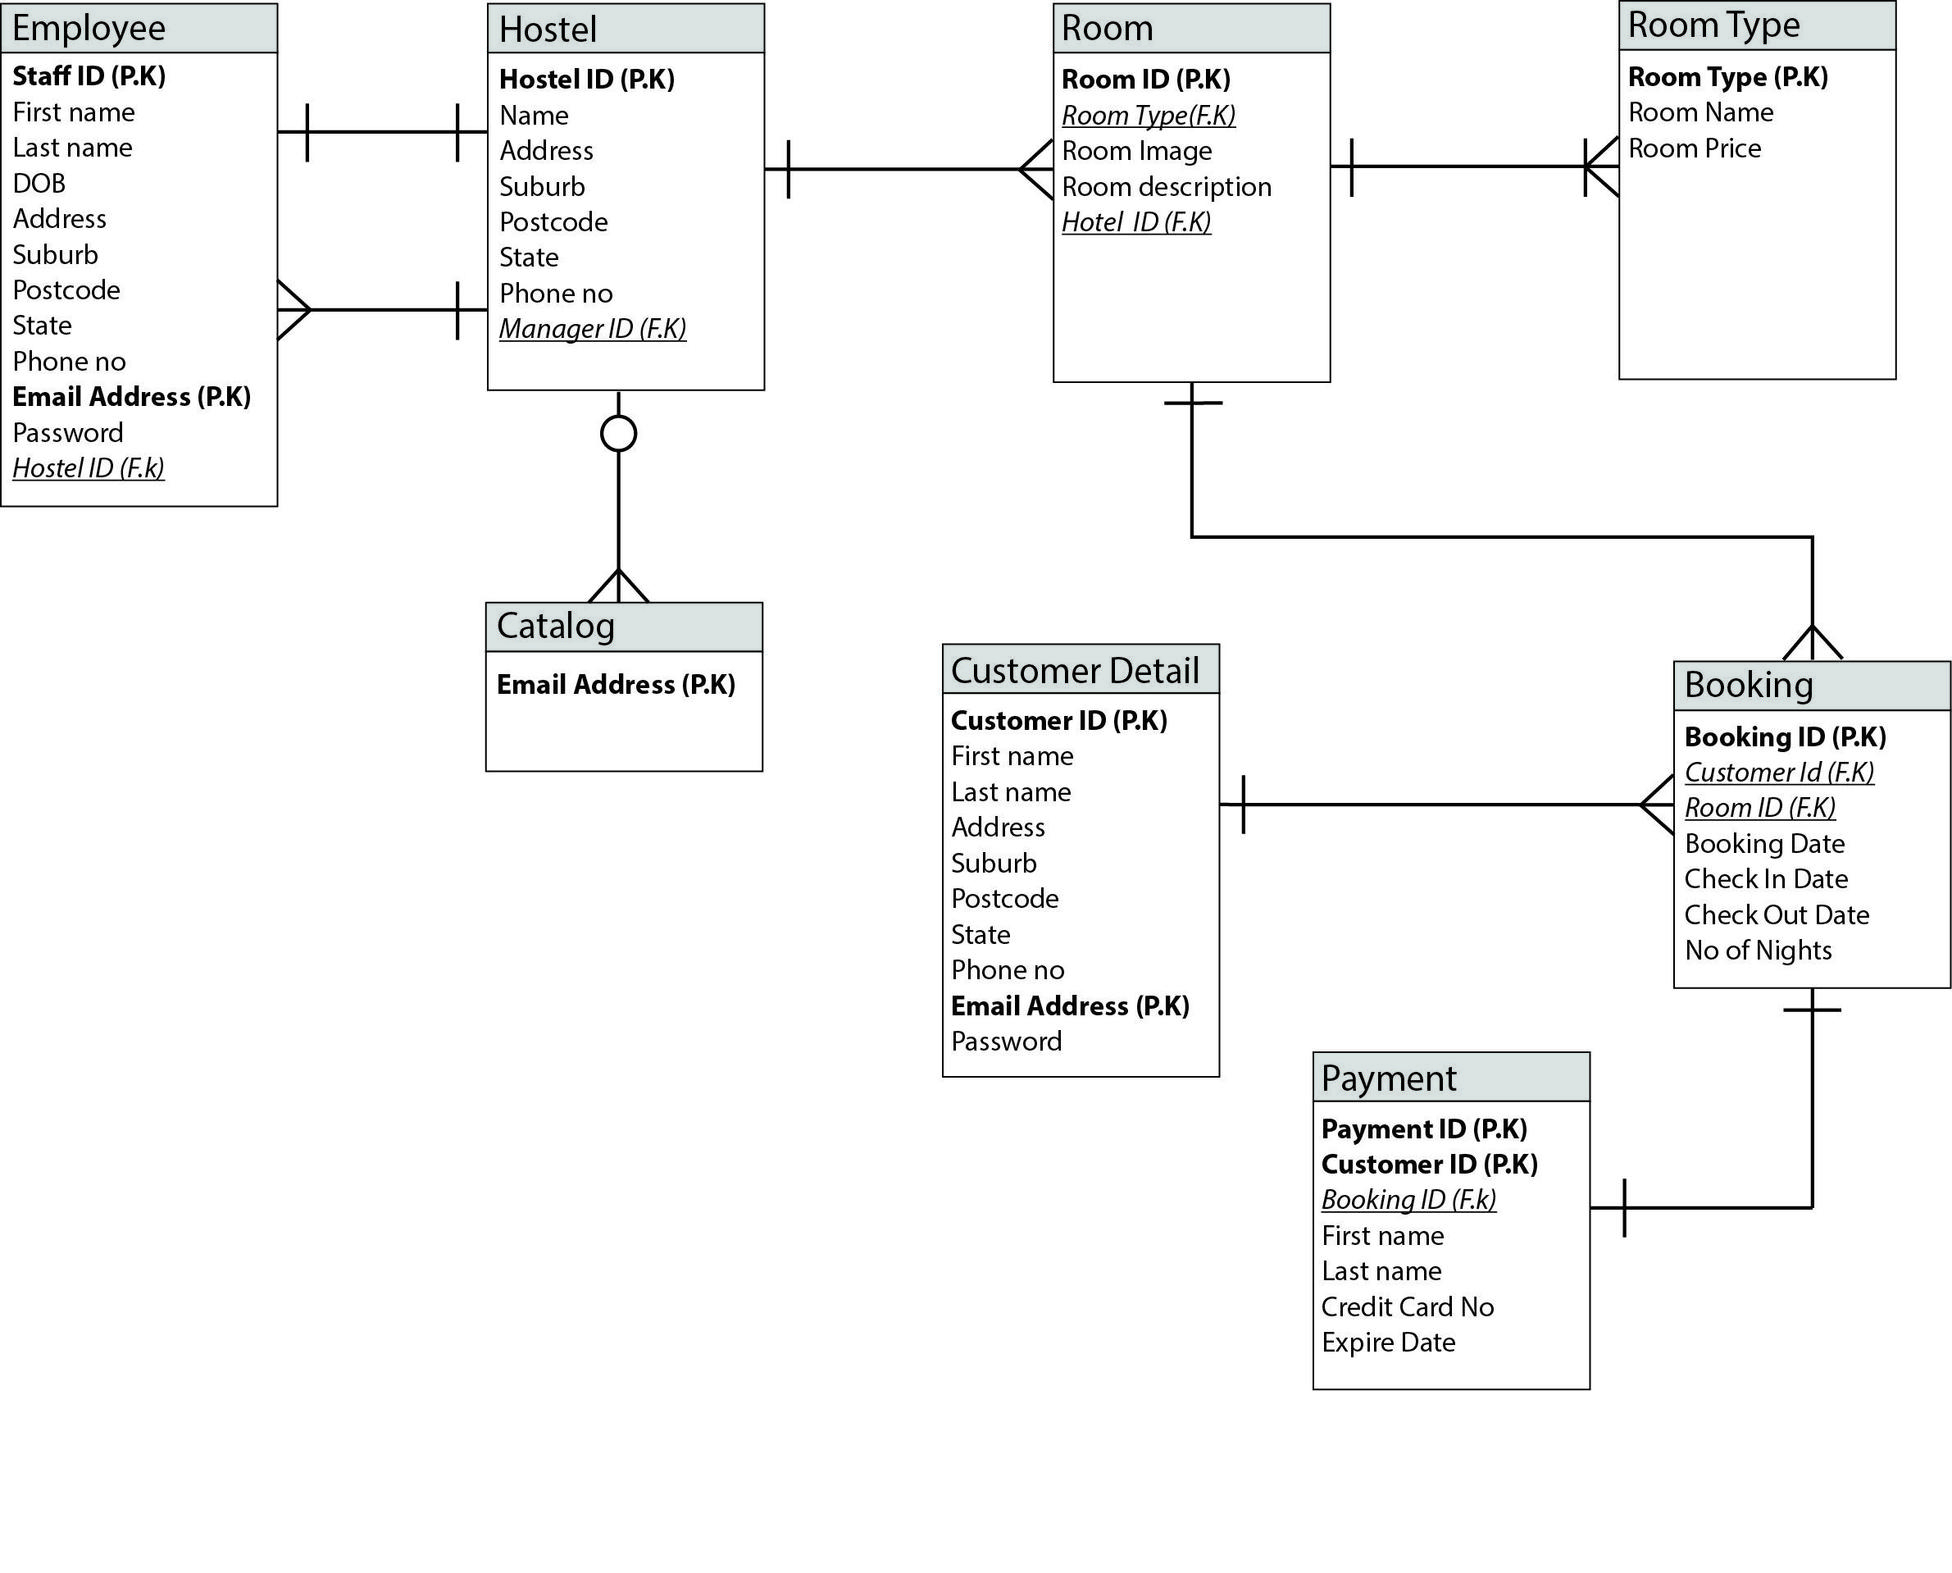 Online Hostel Management System Er Diagram - Database intended for Entity Relationship Diagram Online